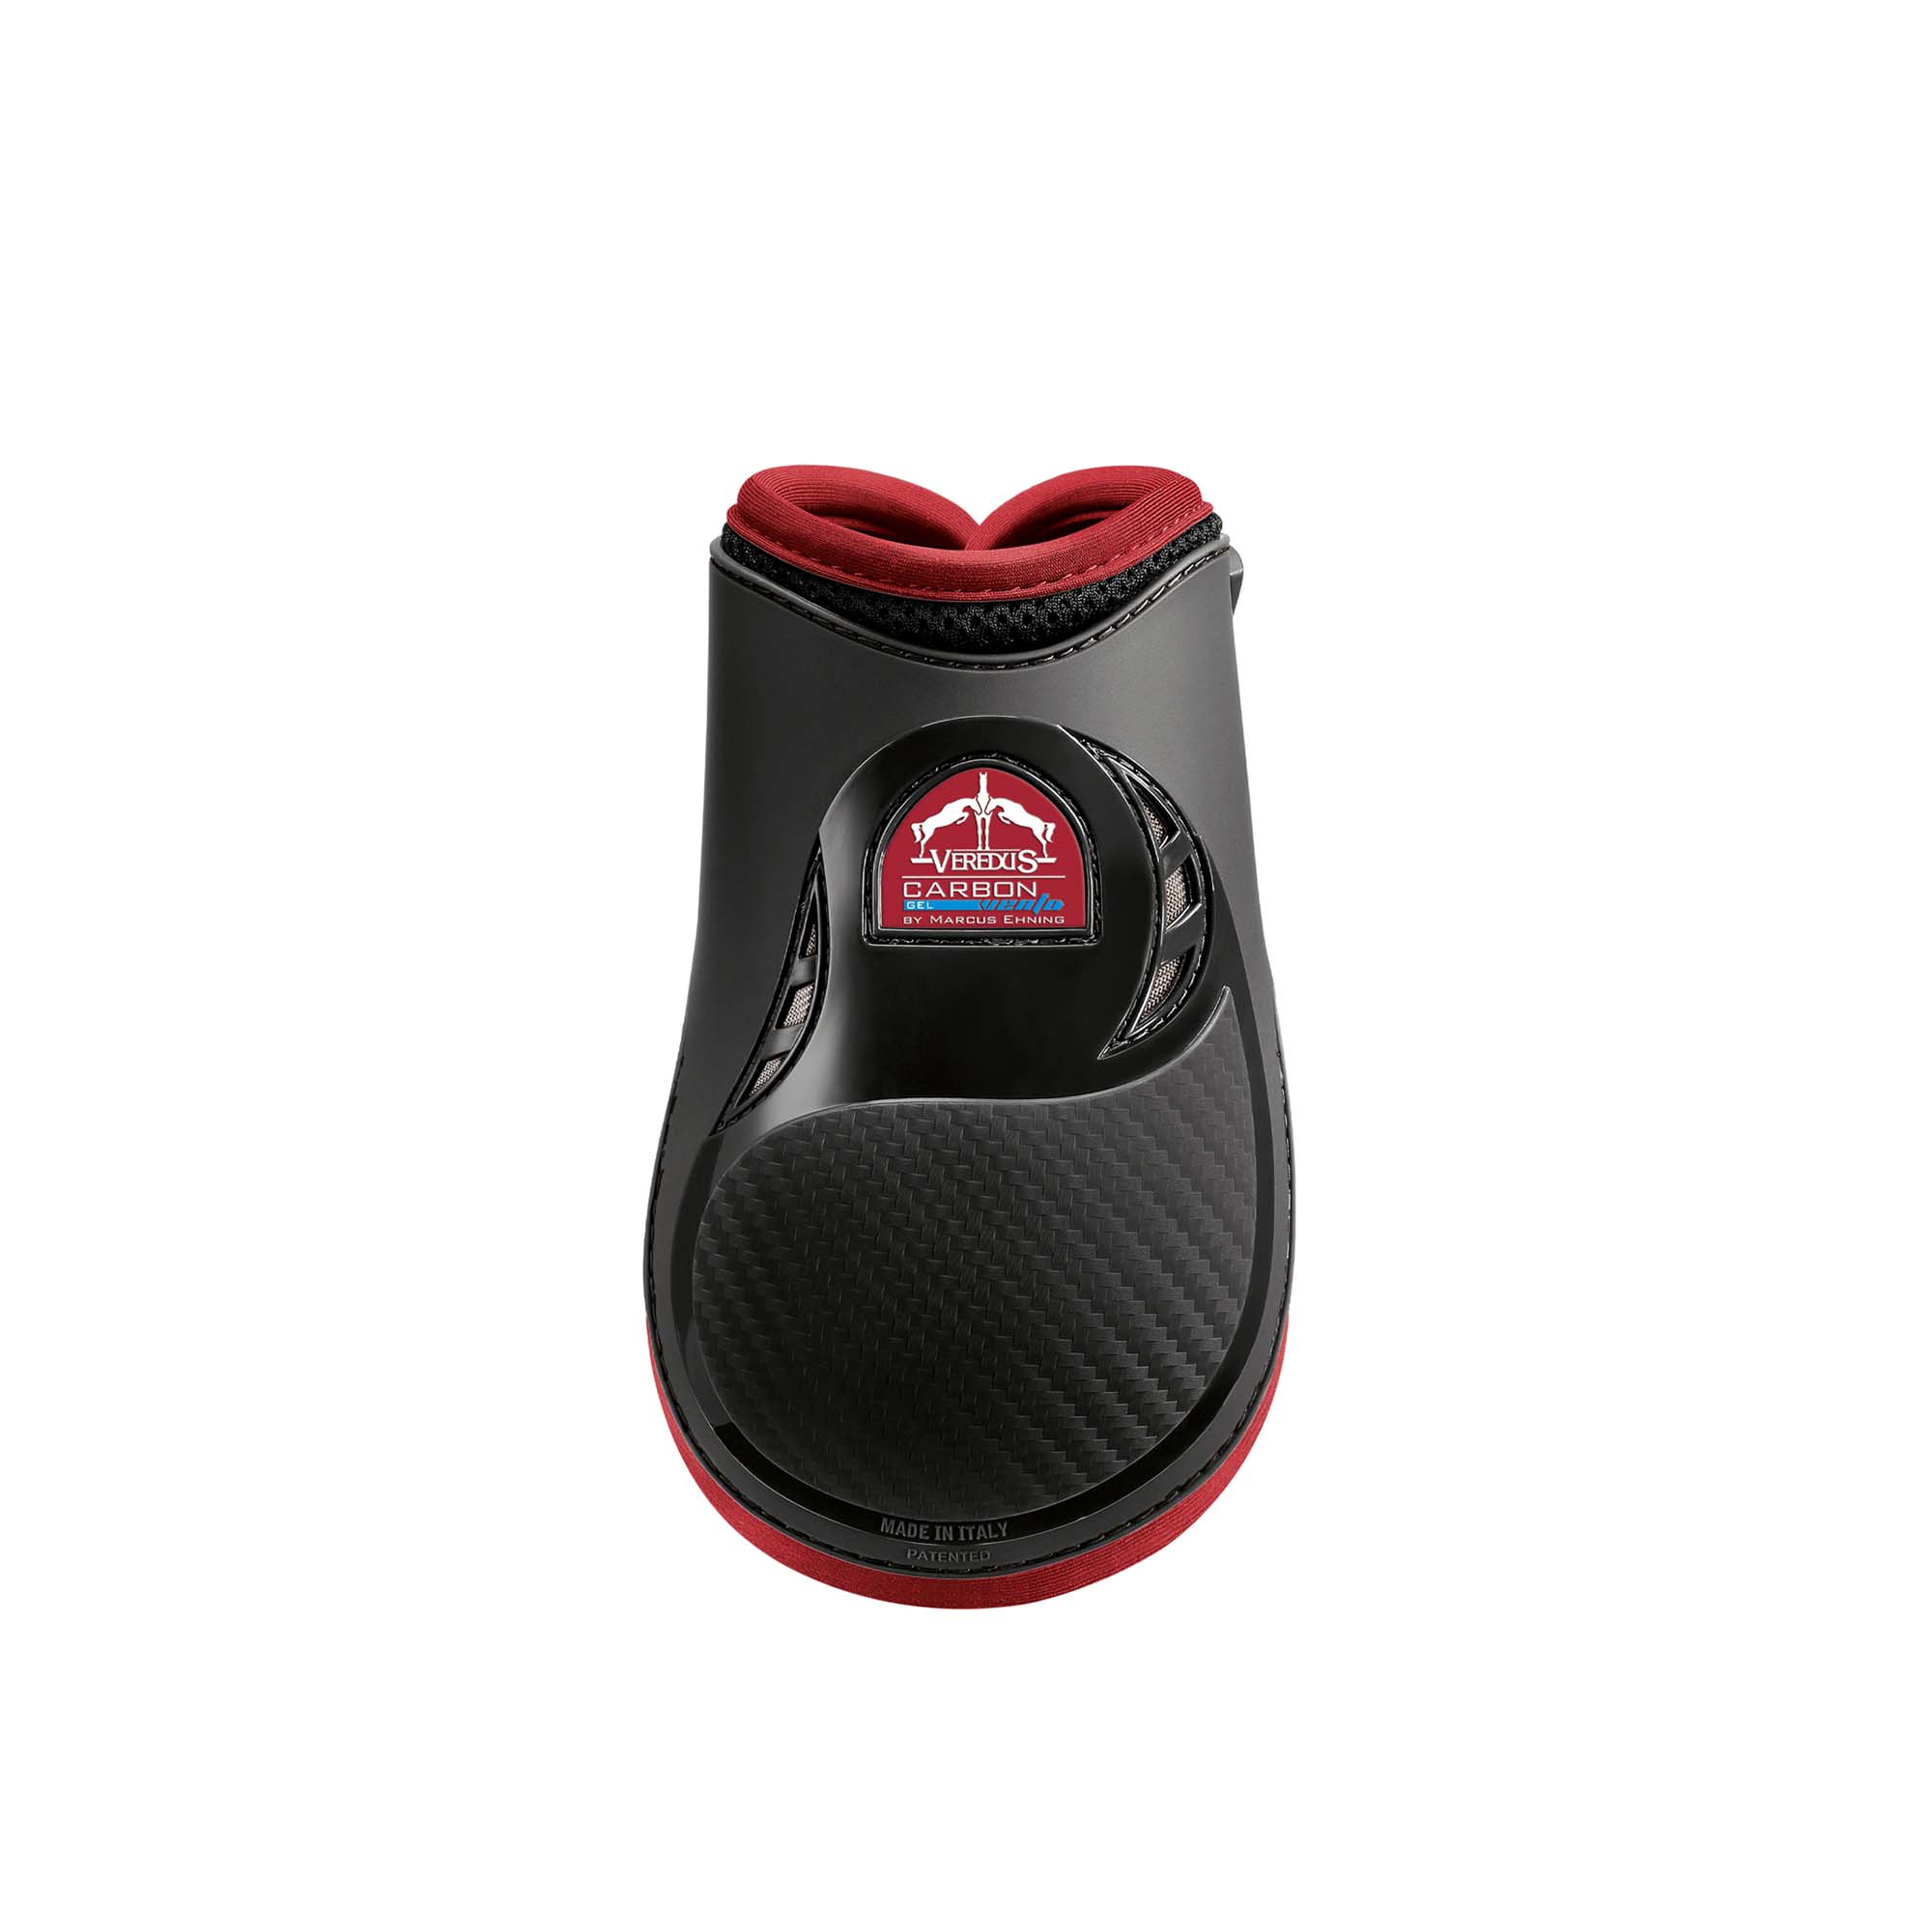 Verdus Carbon Gel Vento Rear Leg Fetlock Boot - Double Ventilation - Black/Bordeaux 